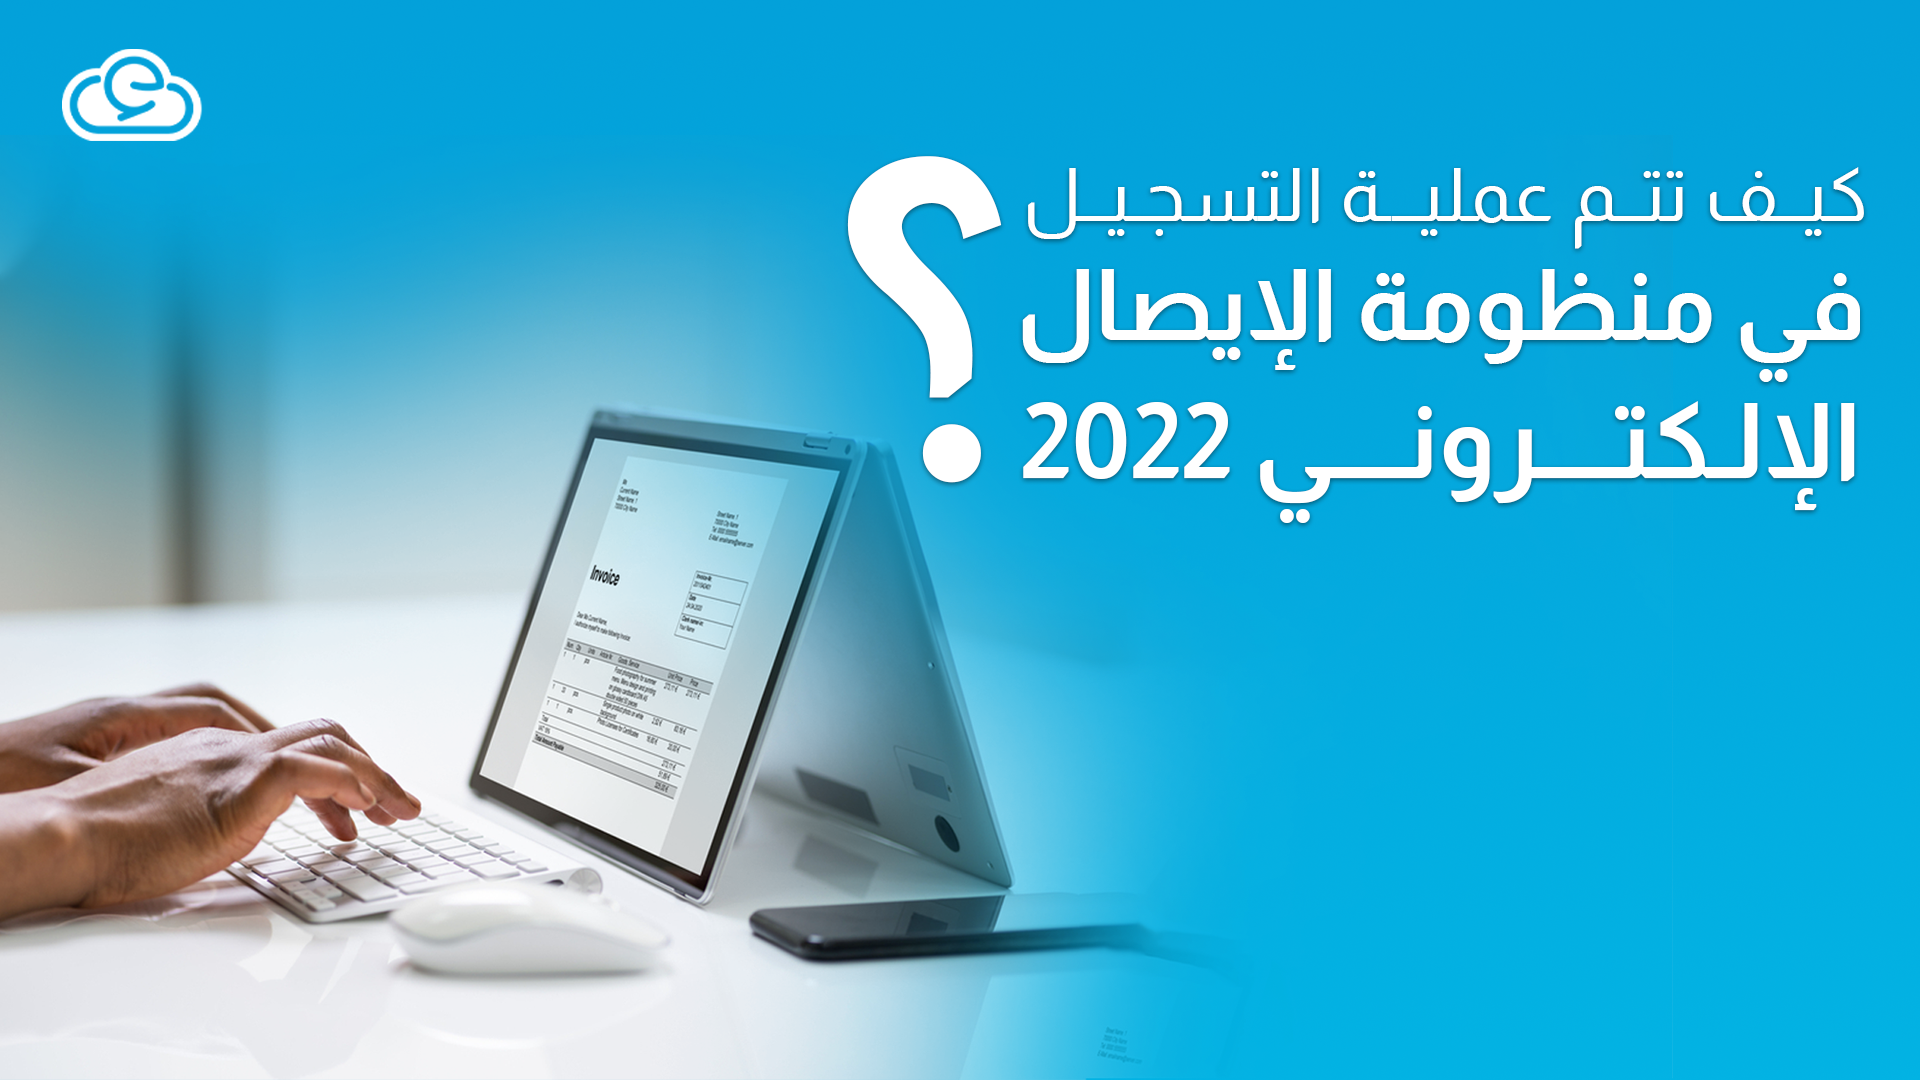 كيف تتم عملية التسجيل في منظومة الإيصال الإلكتروني 2022؟